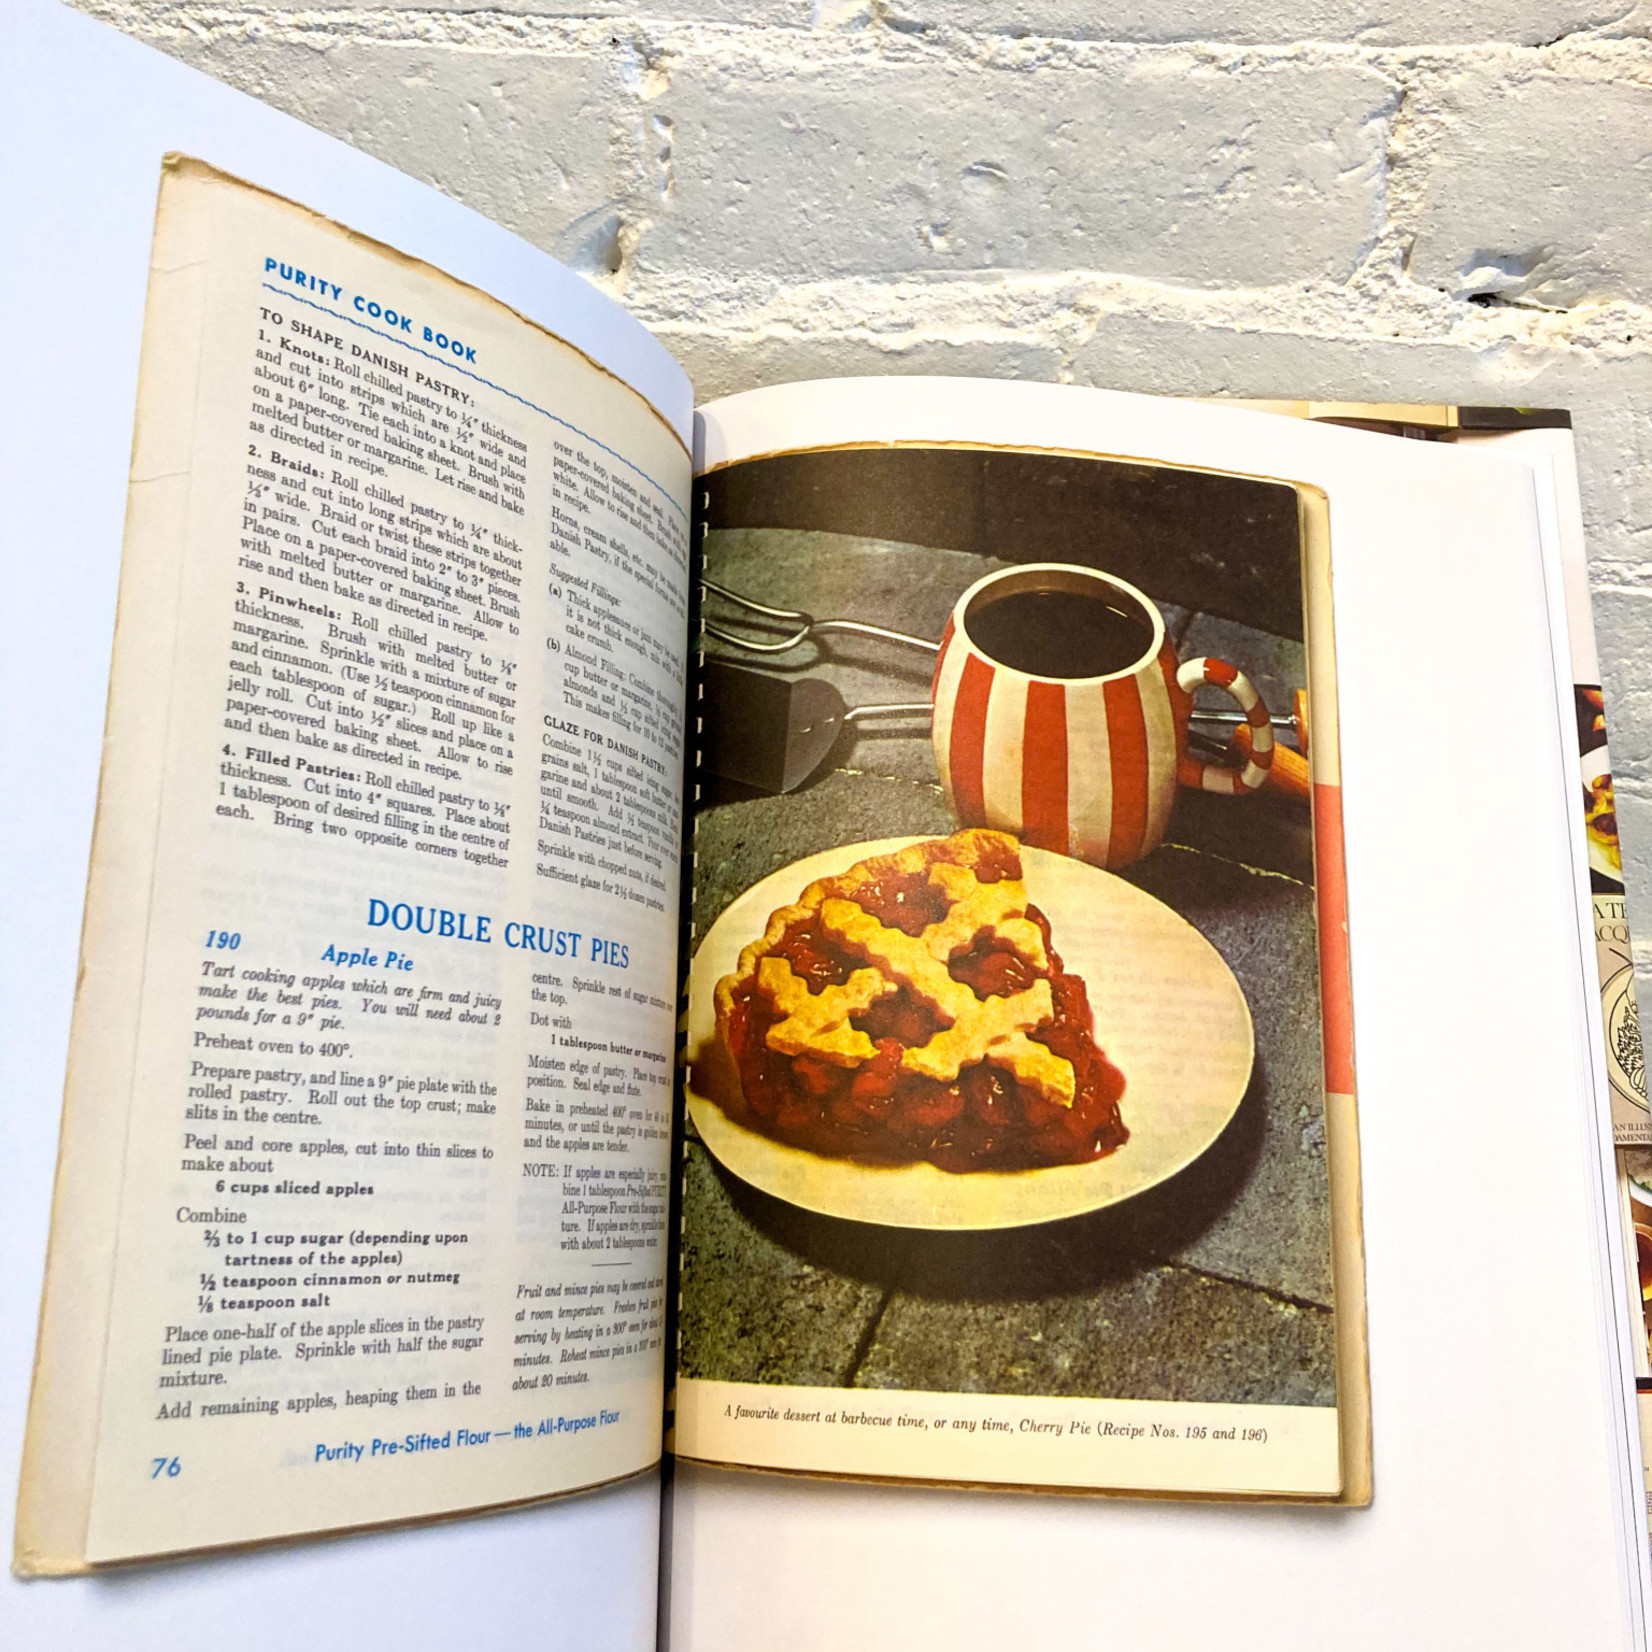 Cookbook Book by Annahita Kamali and Florian Böhm